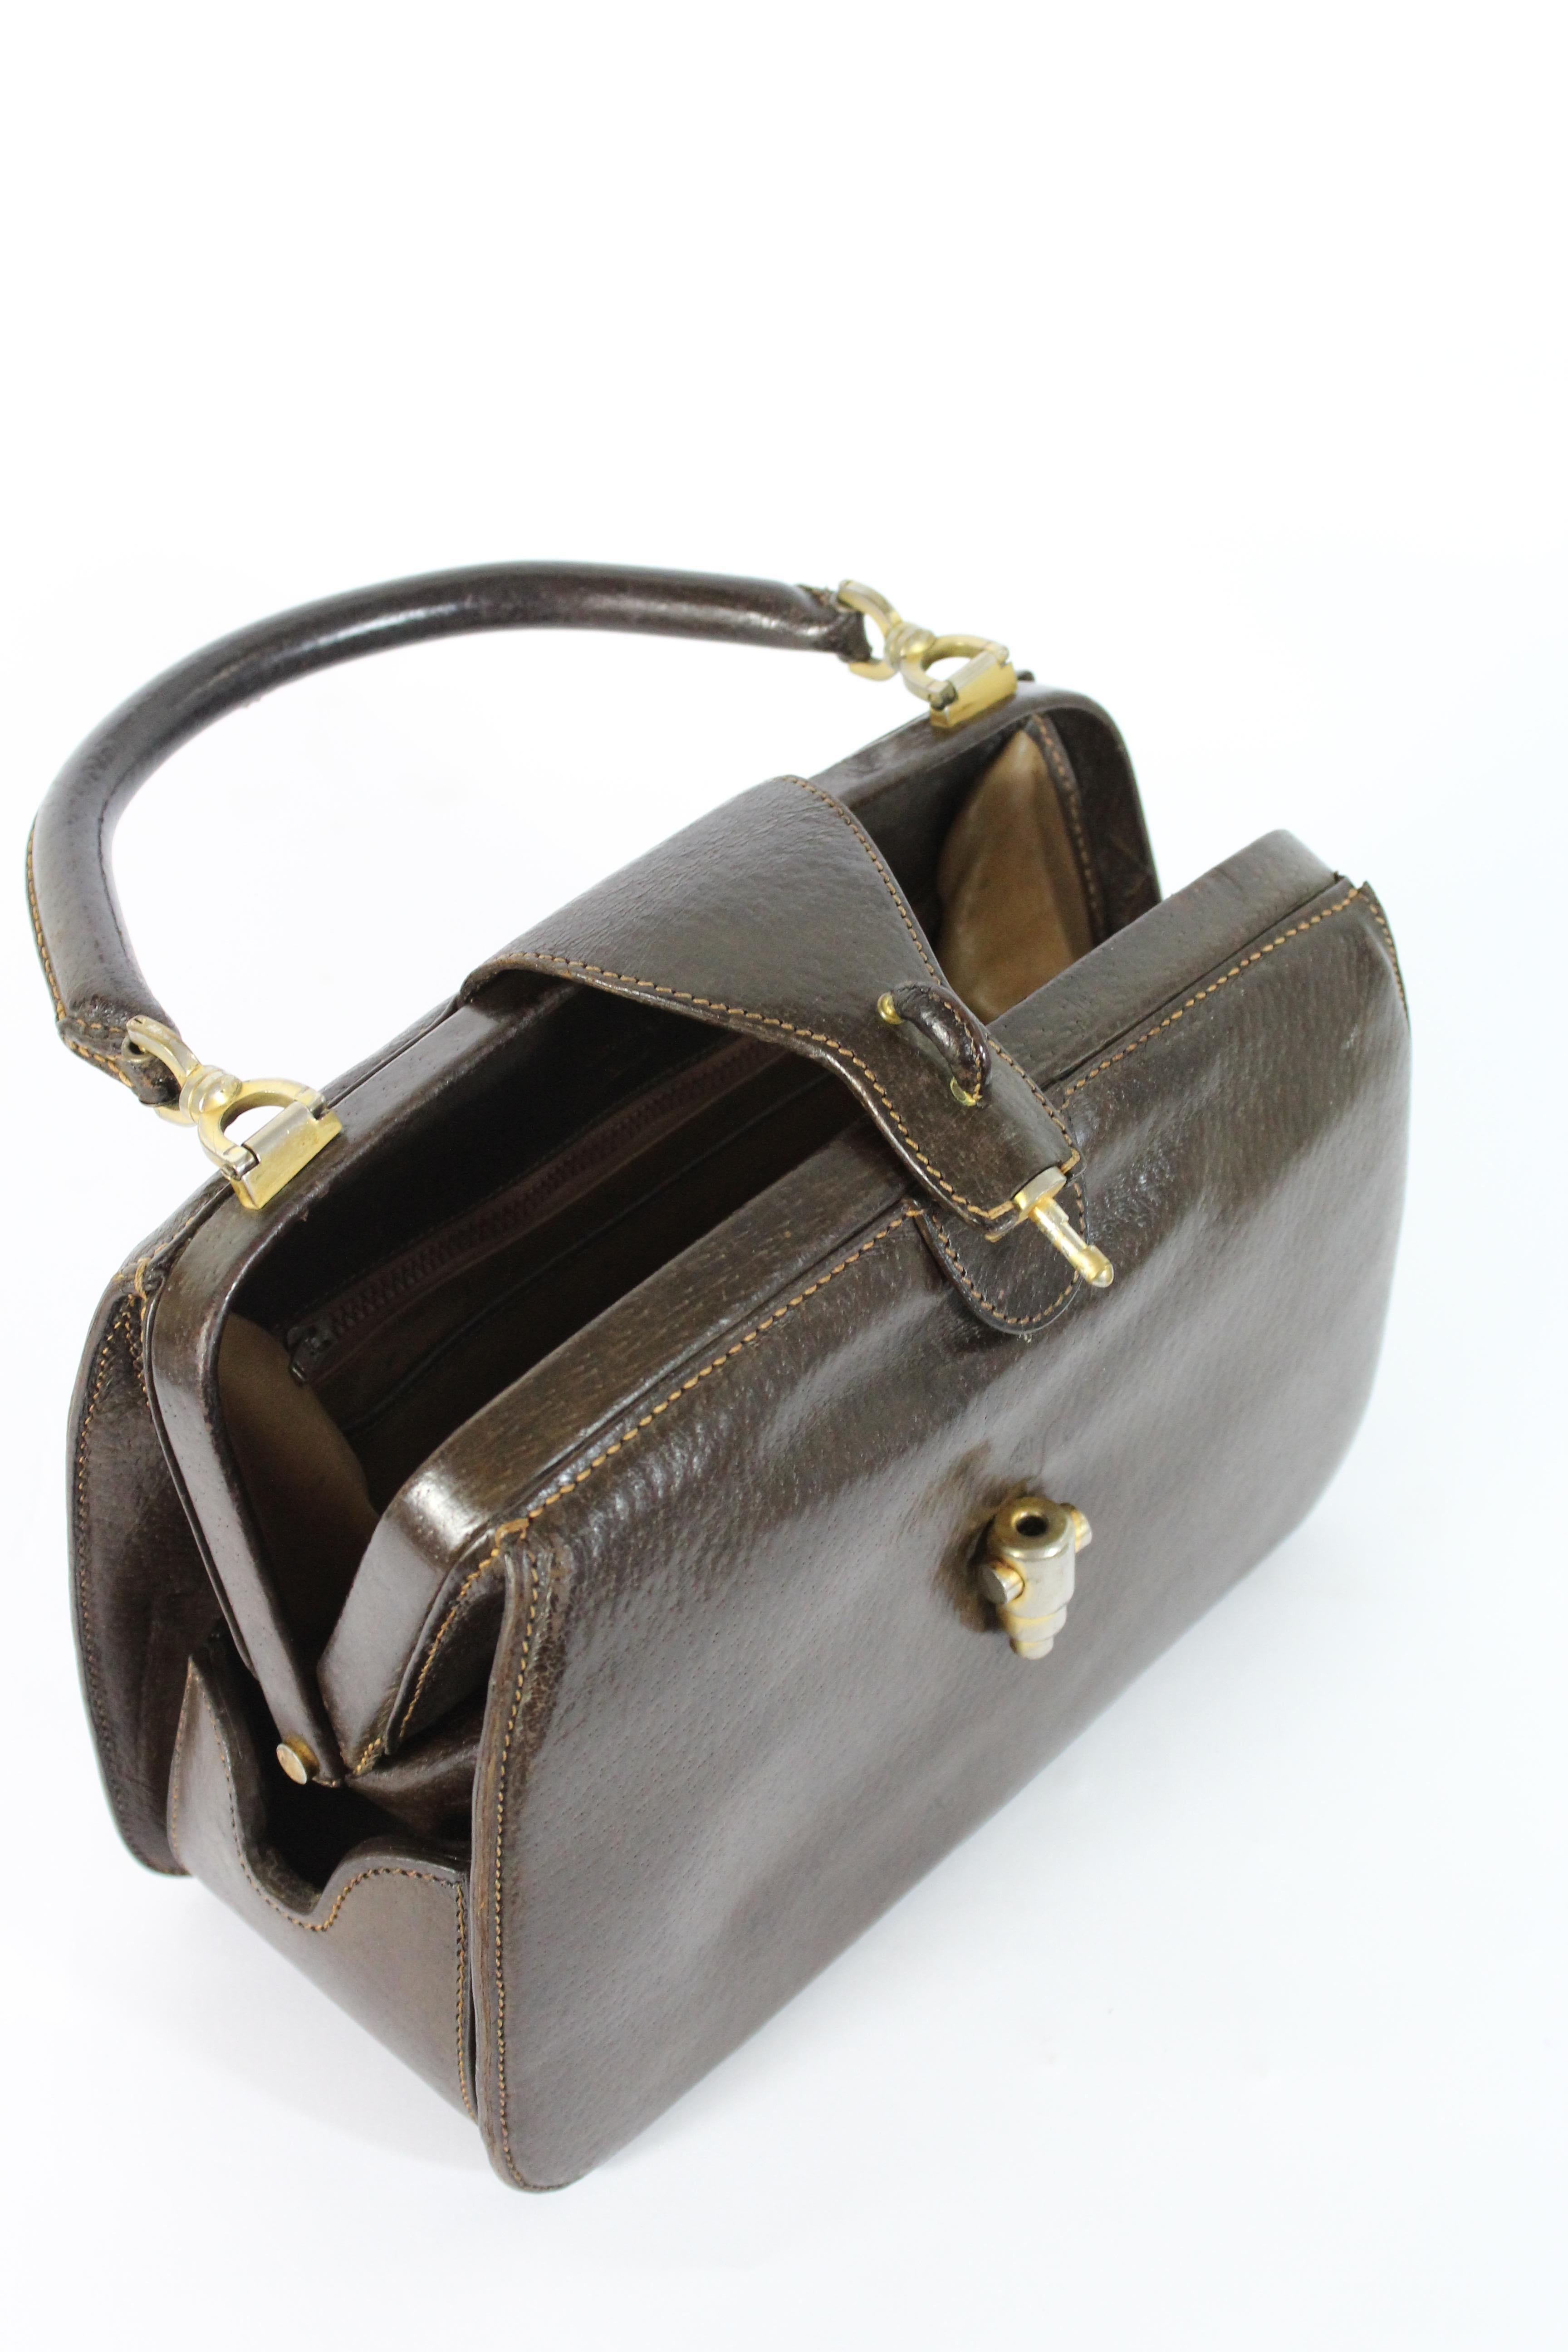 Gucci Brown Leather Rigid Bag Jackie Vintage 1950's 1